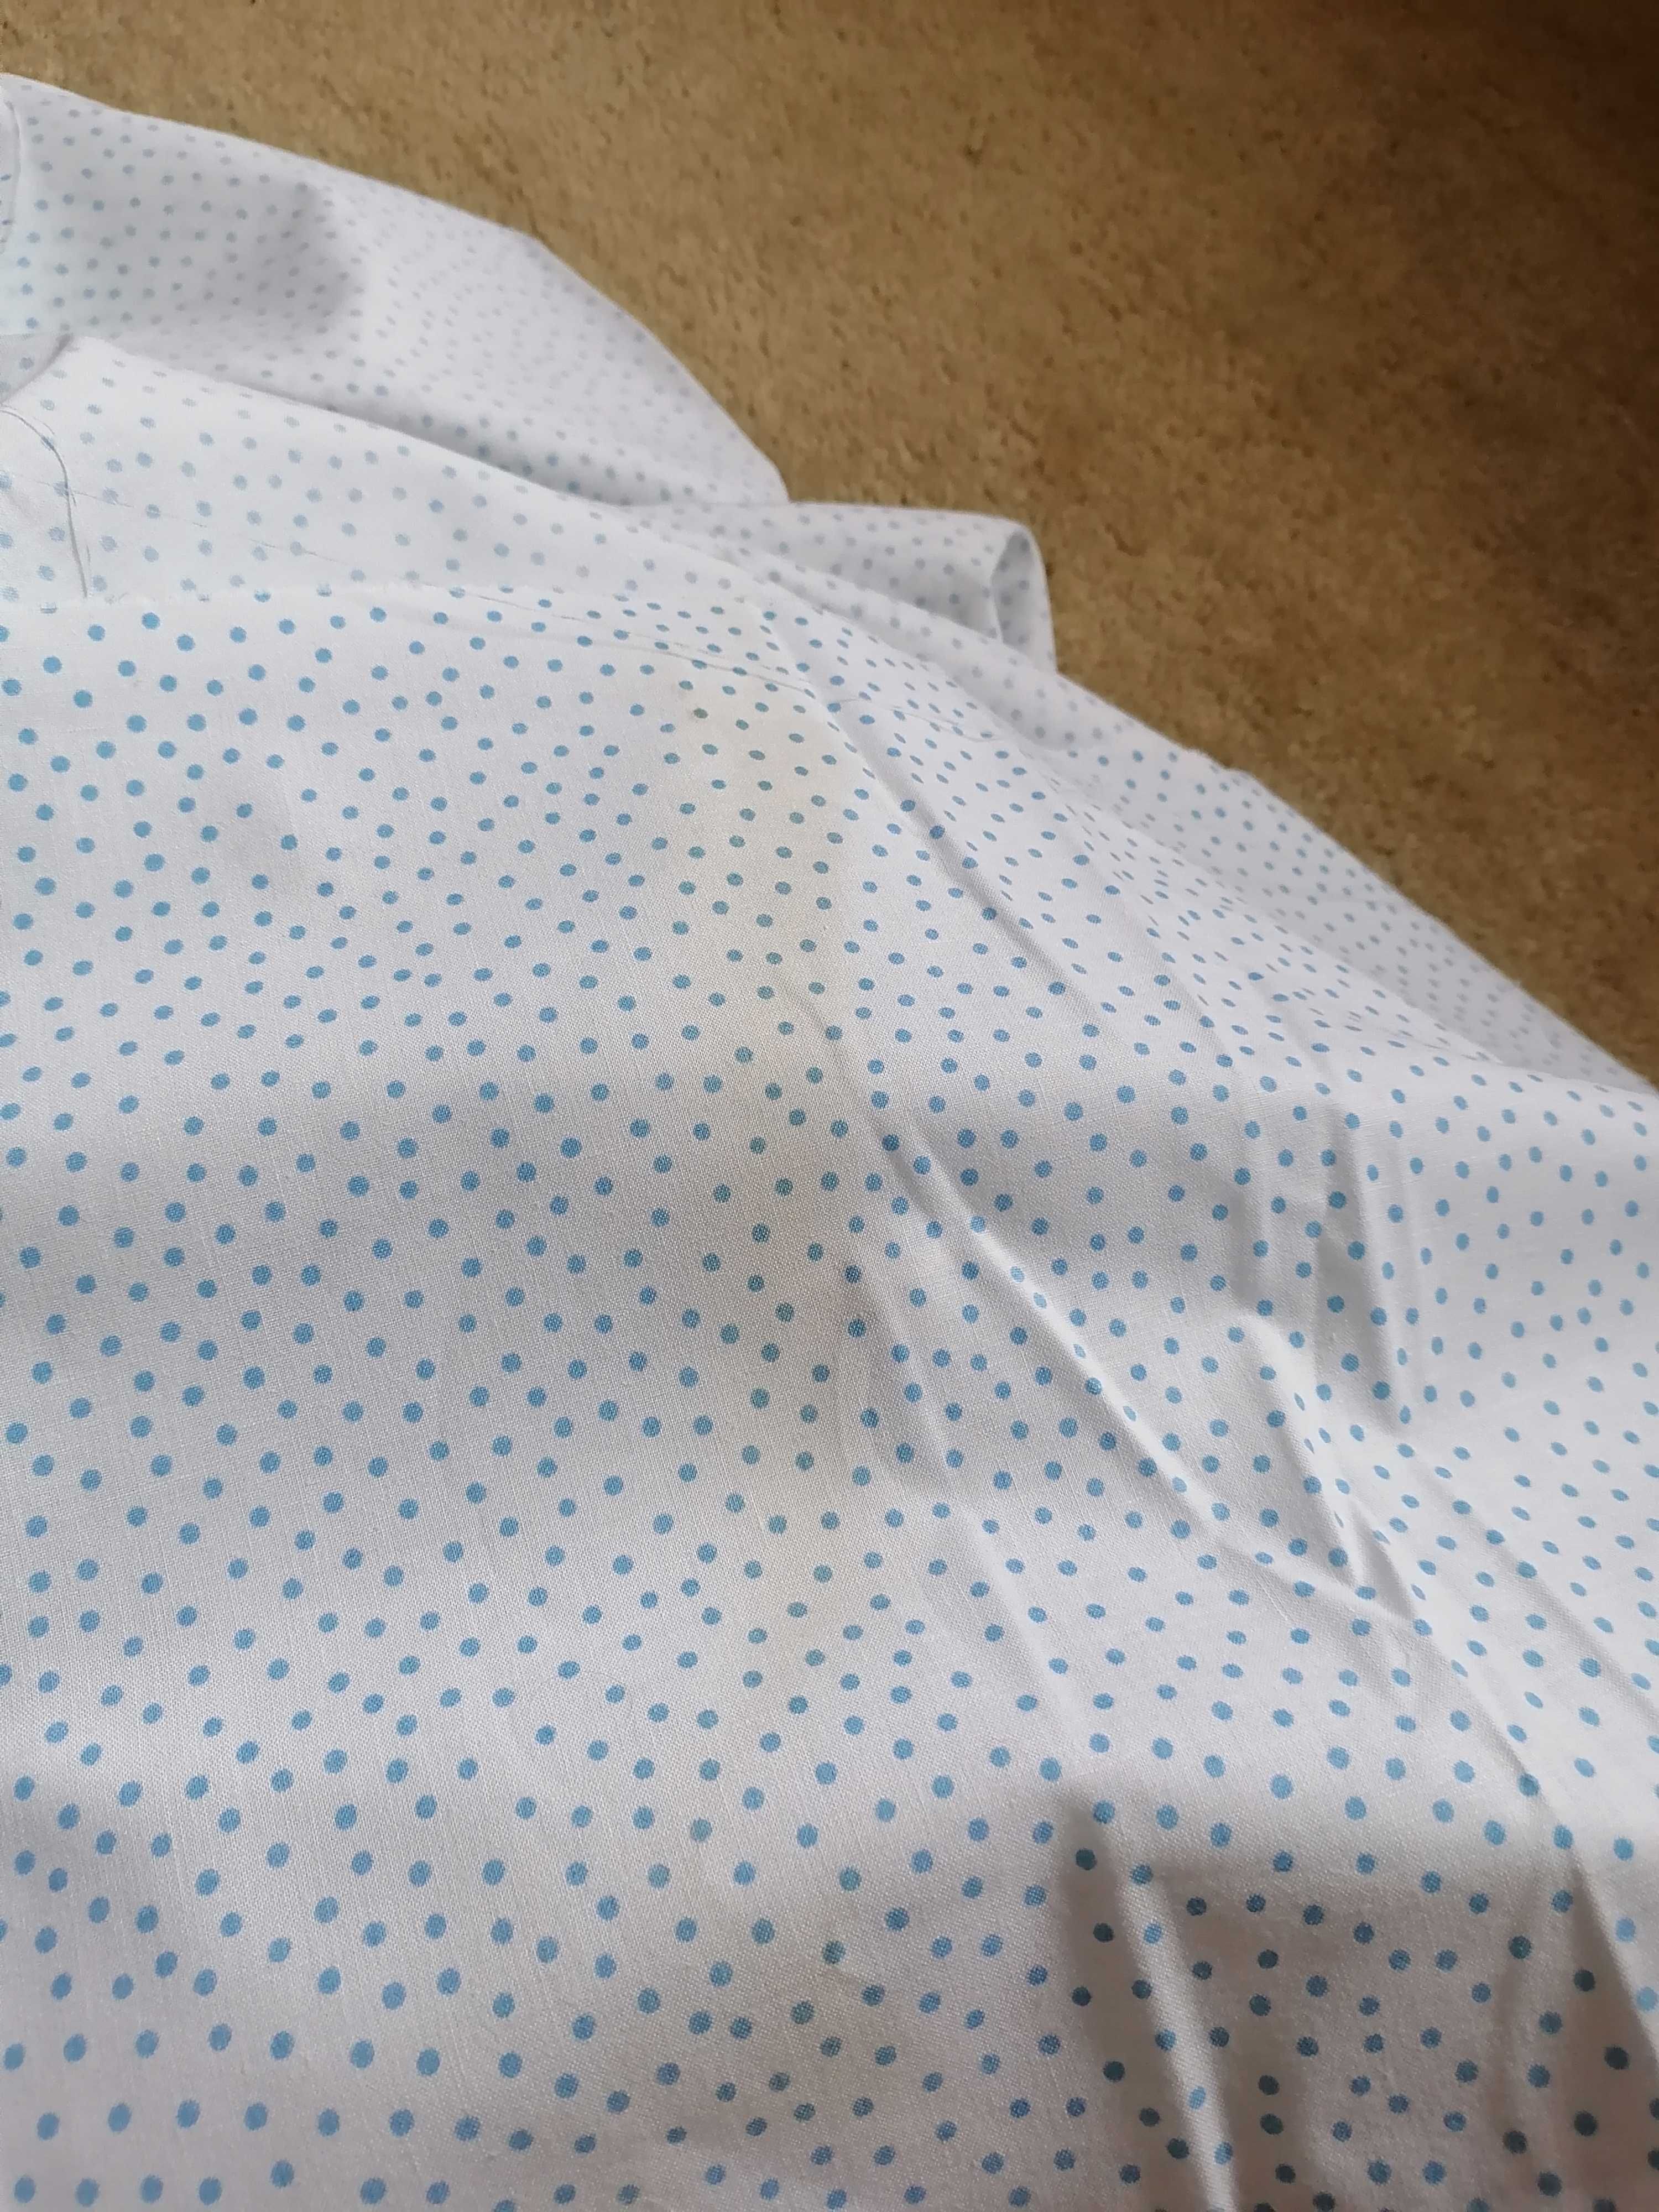 Tkanina, kupon tkaniny niebieskie kropki bawełna 6,10 m